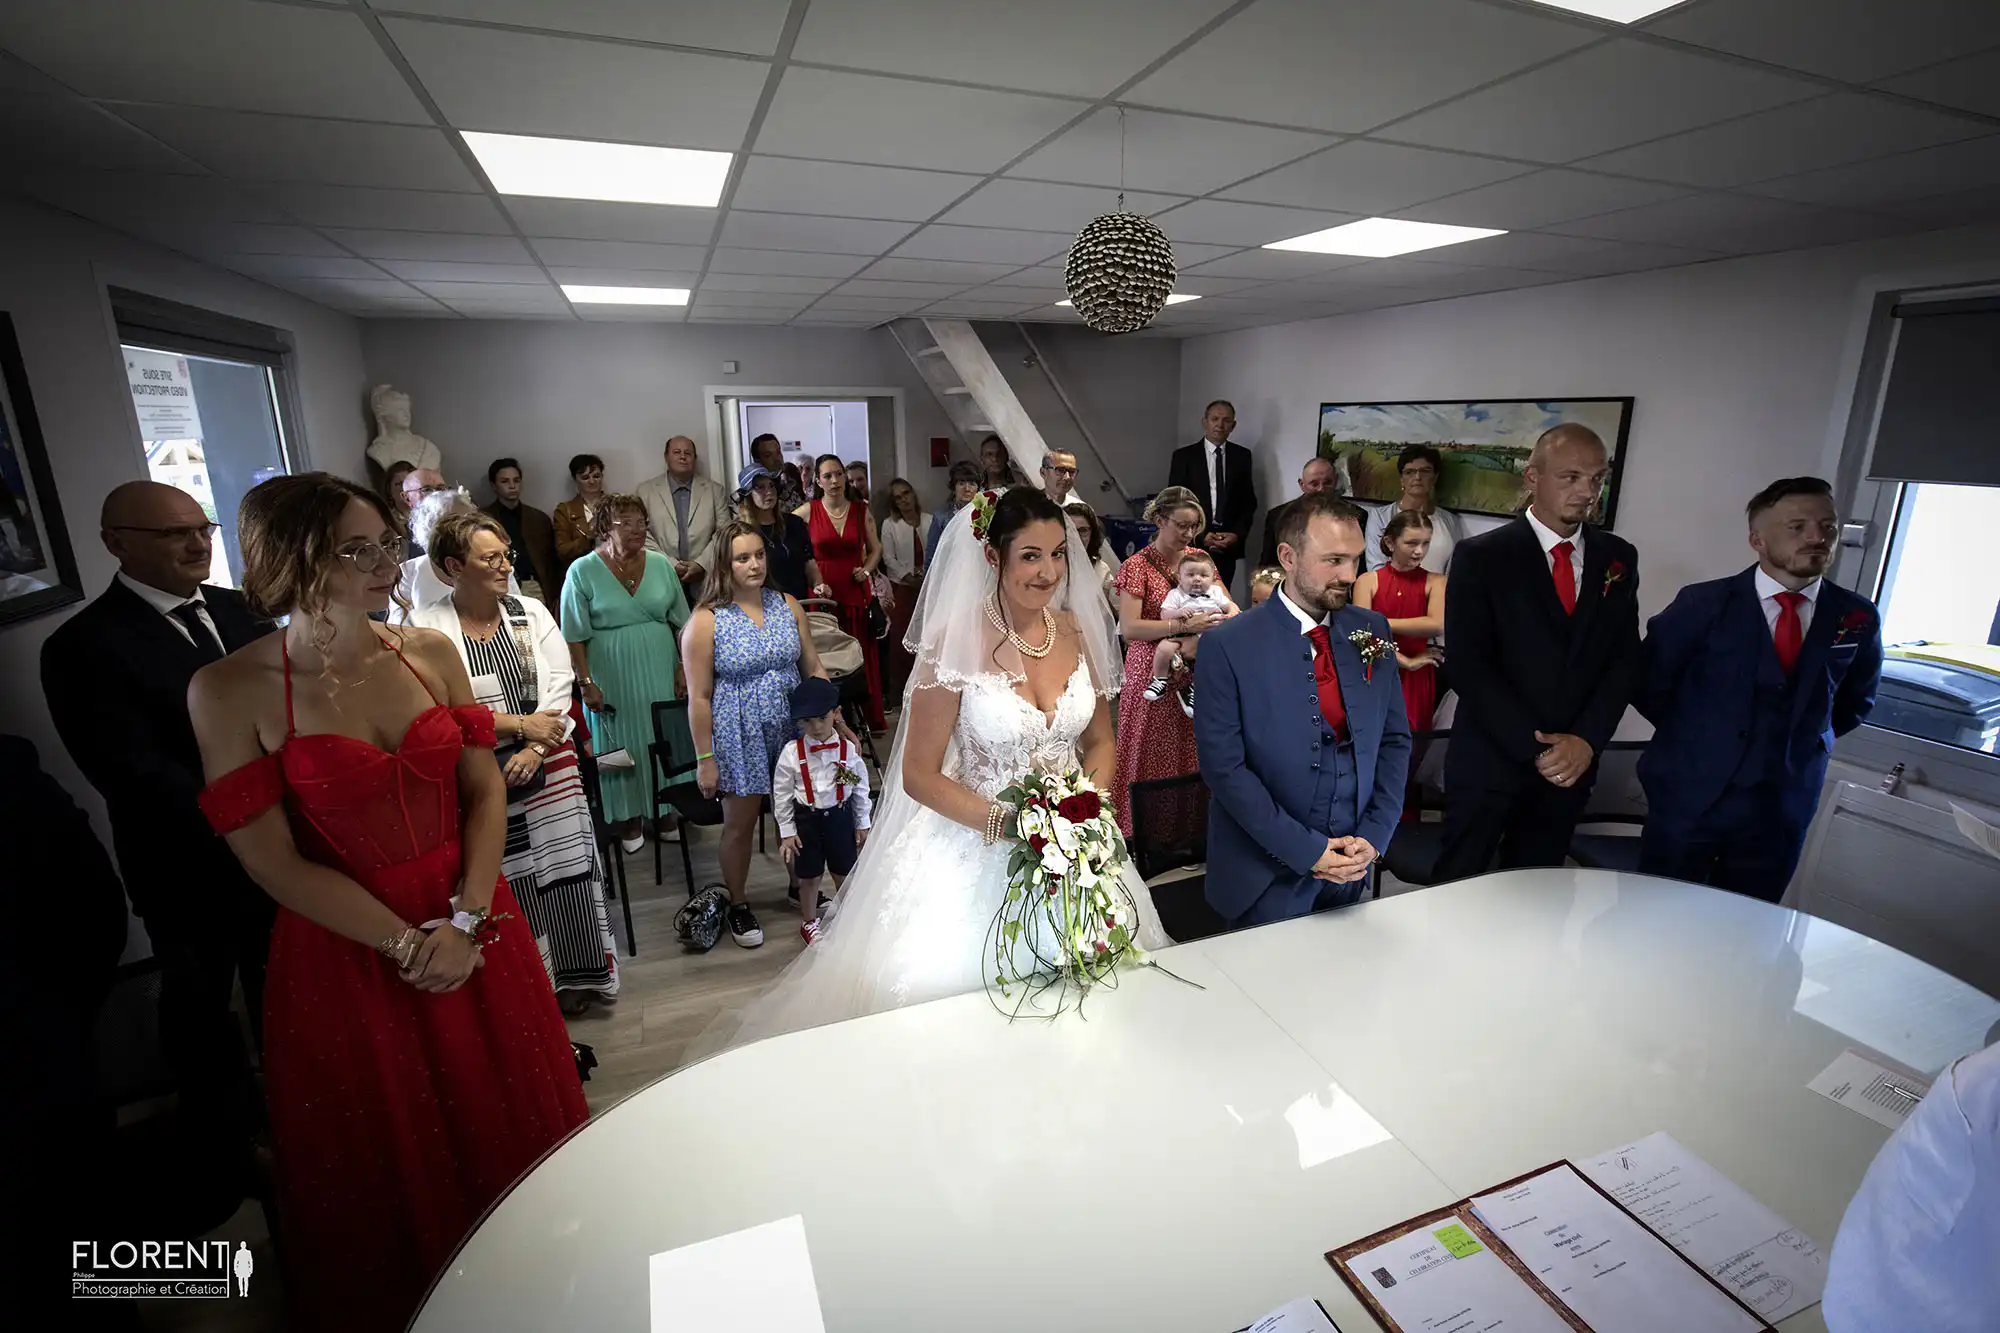 photographe mariage lille etaples les mariés joyeux devant le maire à la mairie florent studio boulogne sur mer le touquet paris saint omer